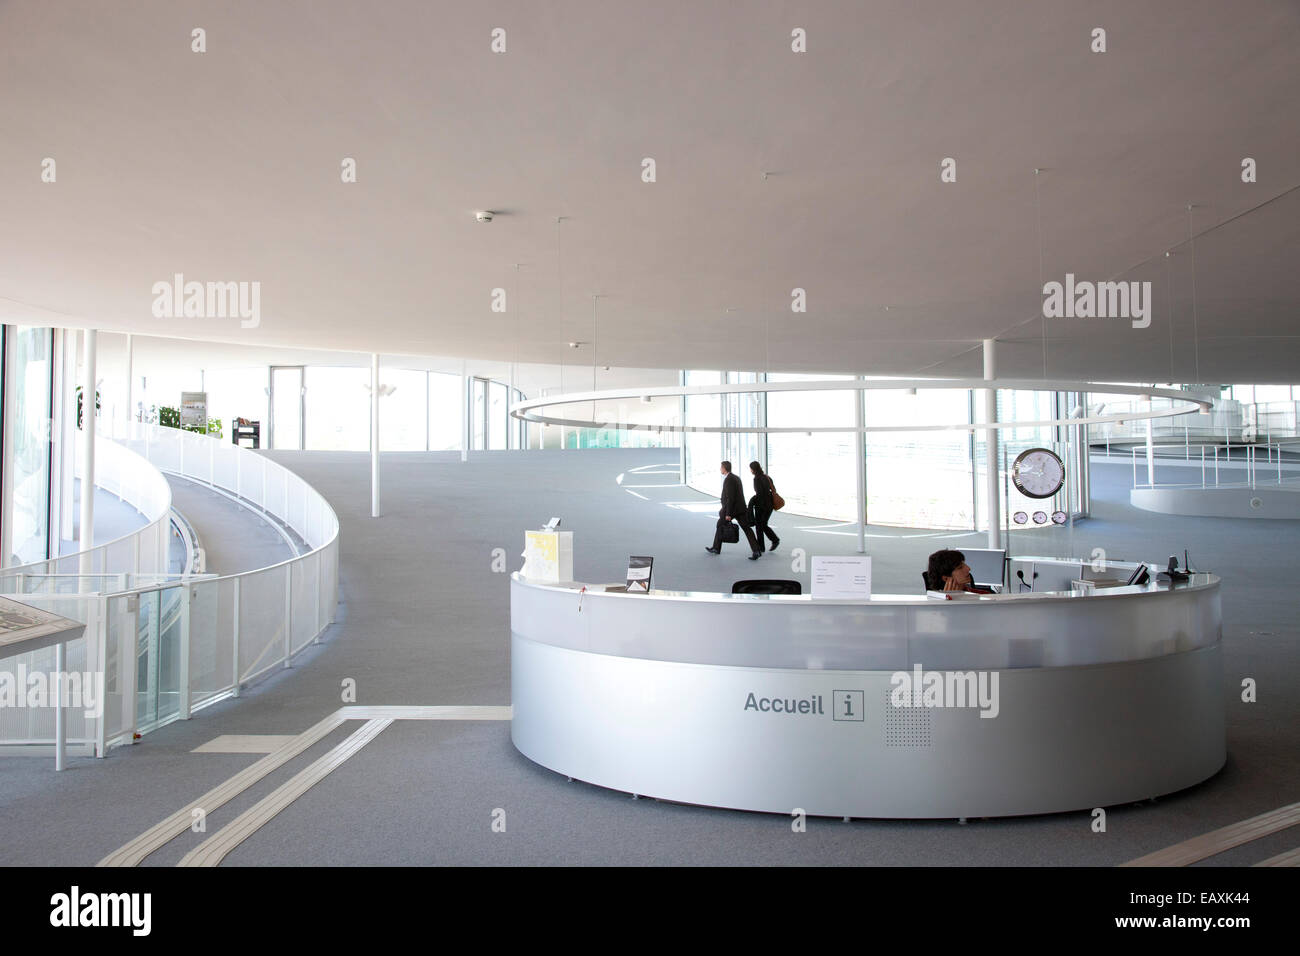 EPFL, ecole polytechnique federale de lausanne, lausanne, switzerland, europe Stock Photo